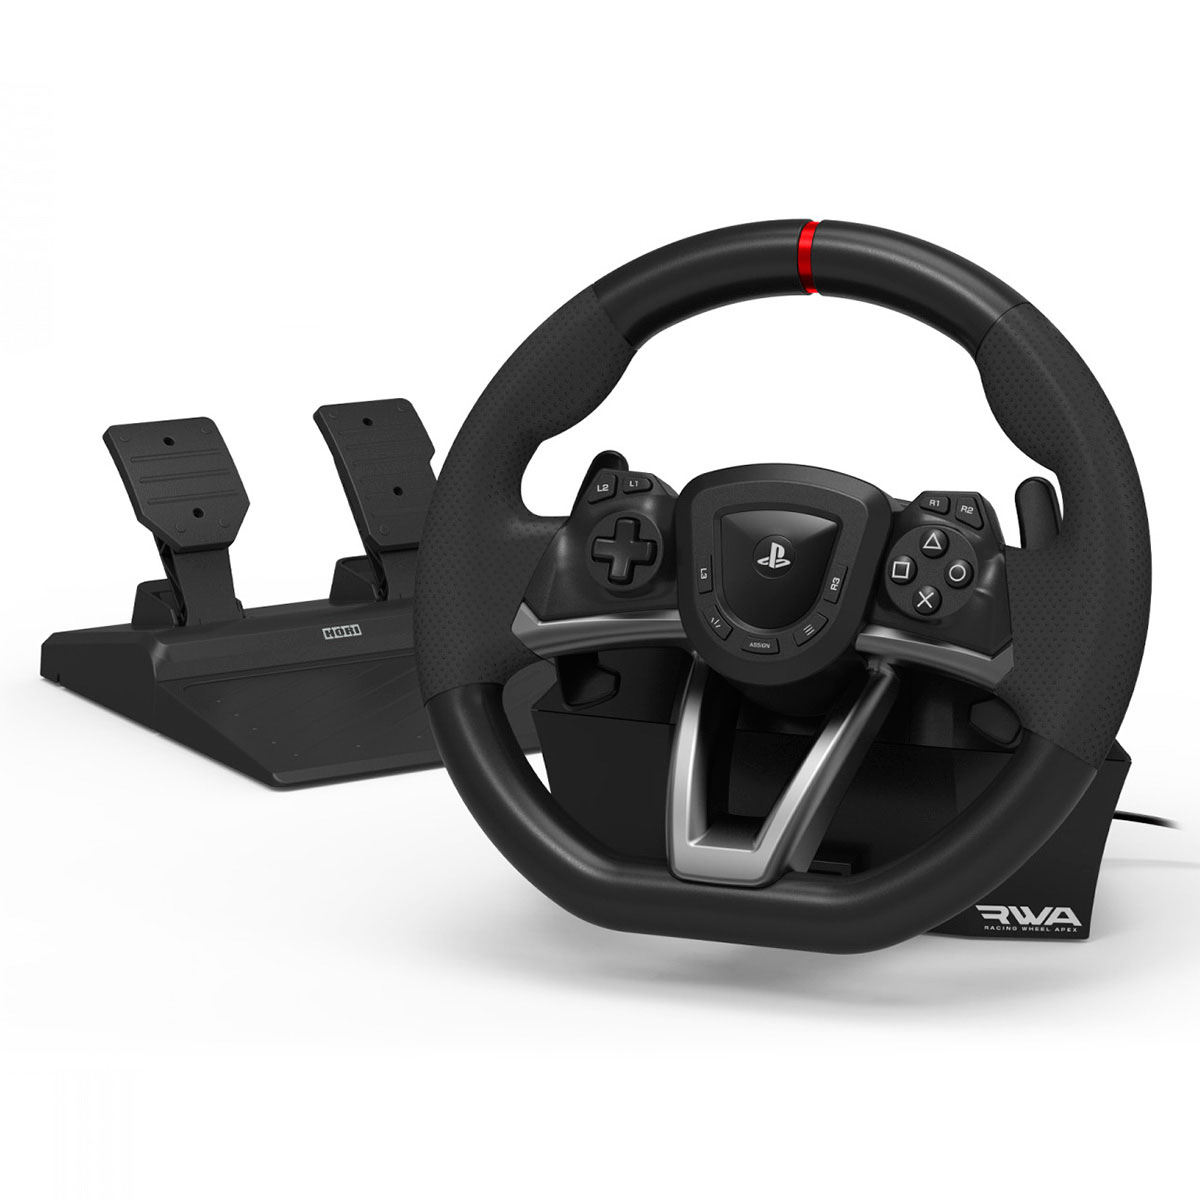 Uforenelig voks Modstand Hori Racing Wheel Apex Gaming rat/pedal til Playstation 5/4